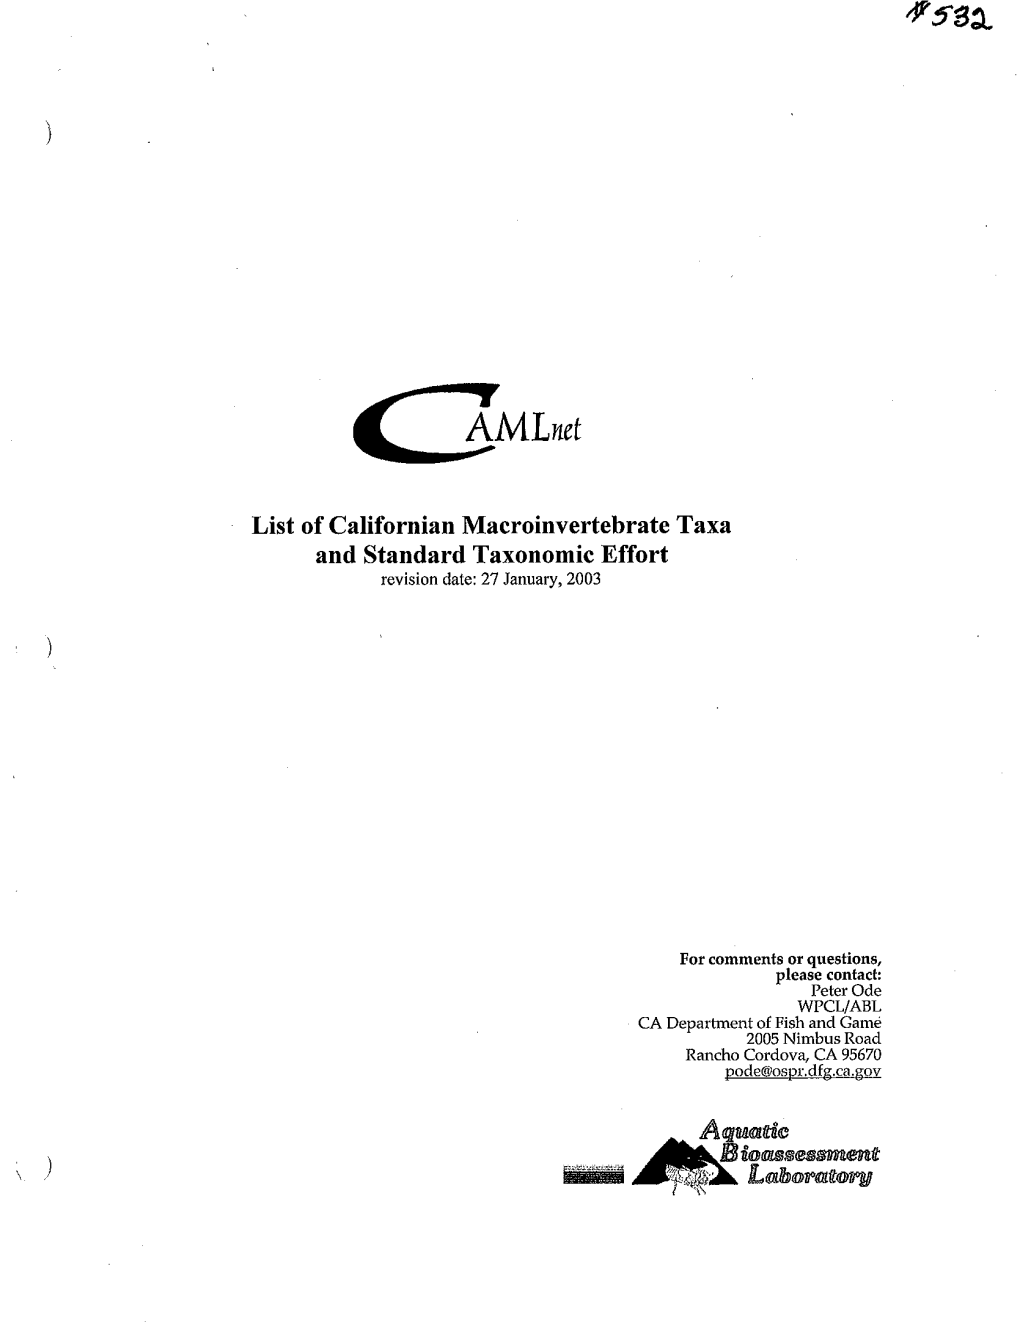 ) List of Californian Macroinvertebrate Taxa and Standard Taxonomic Effort